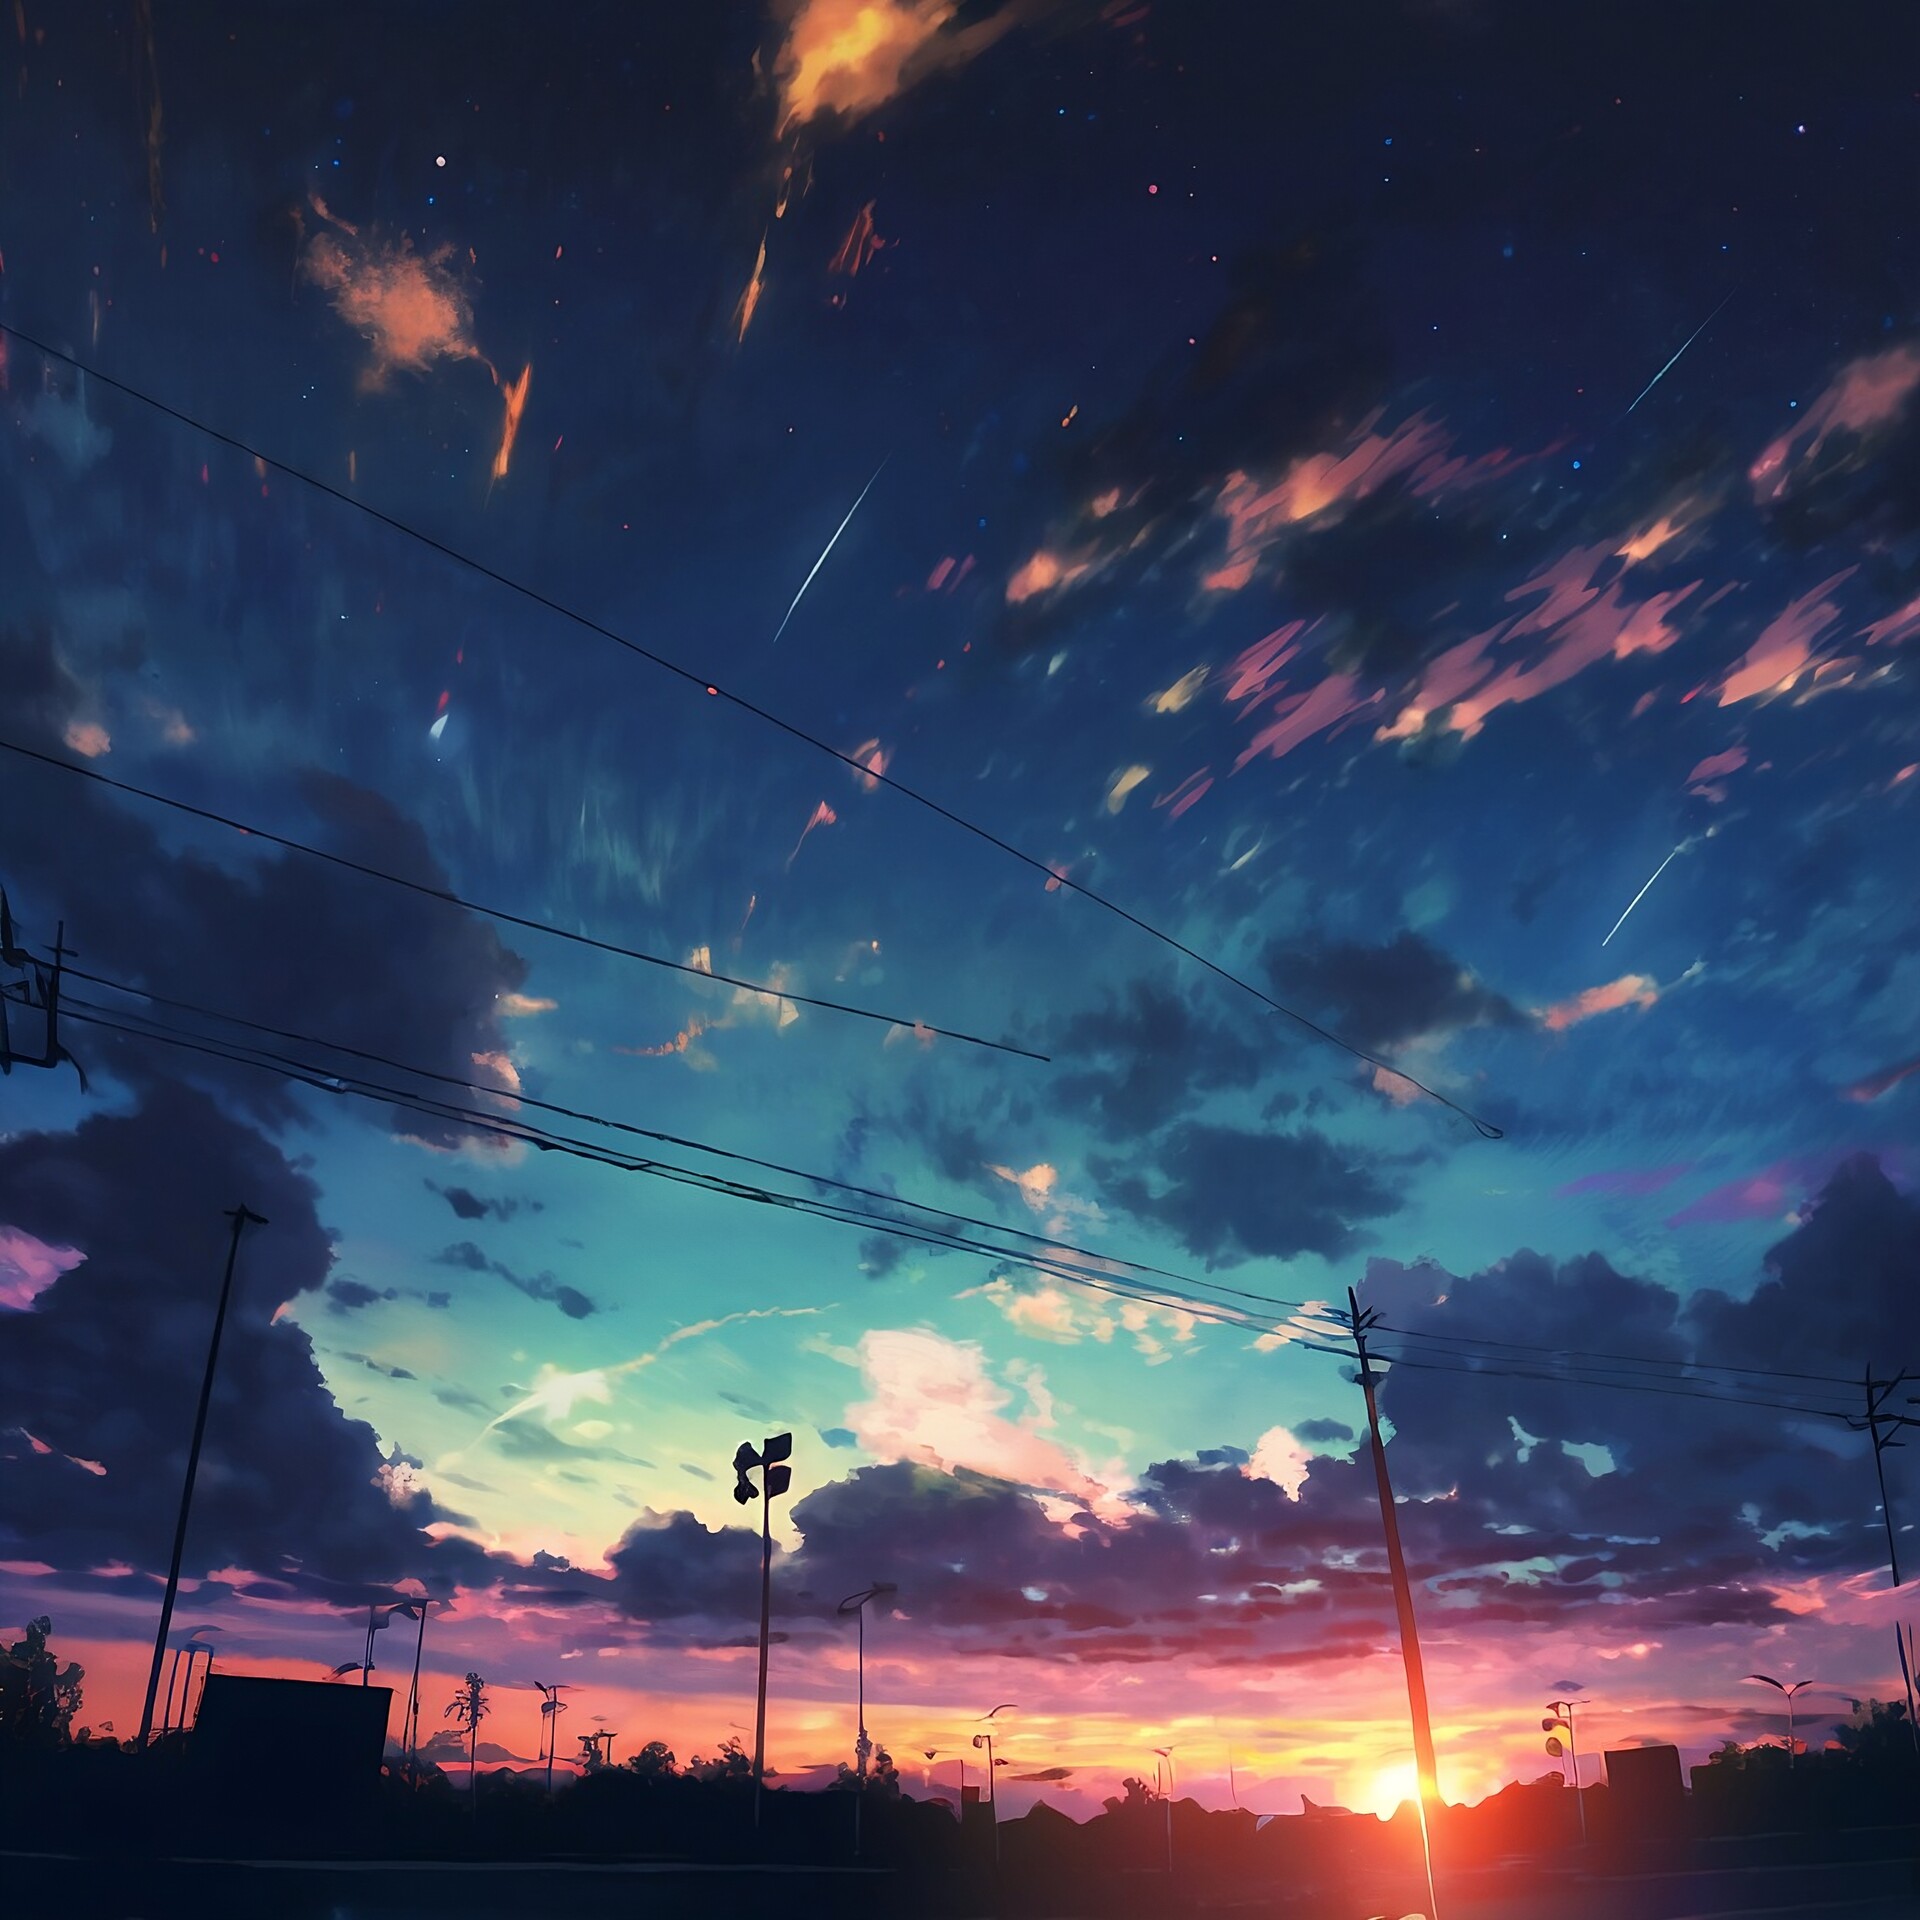 ArtStation - Urban Sunset